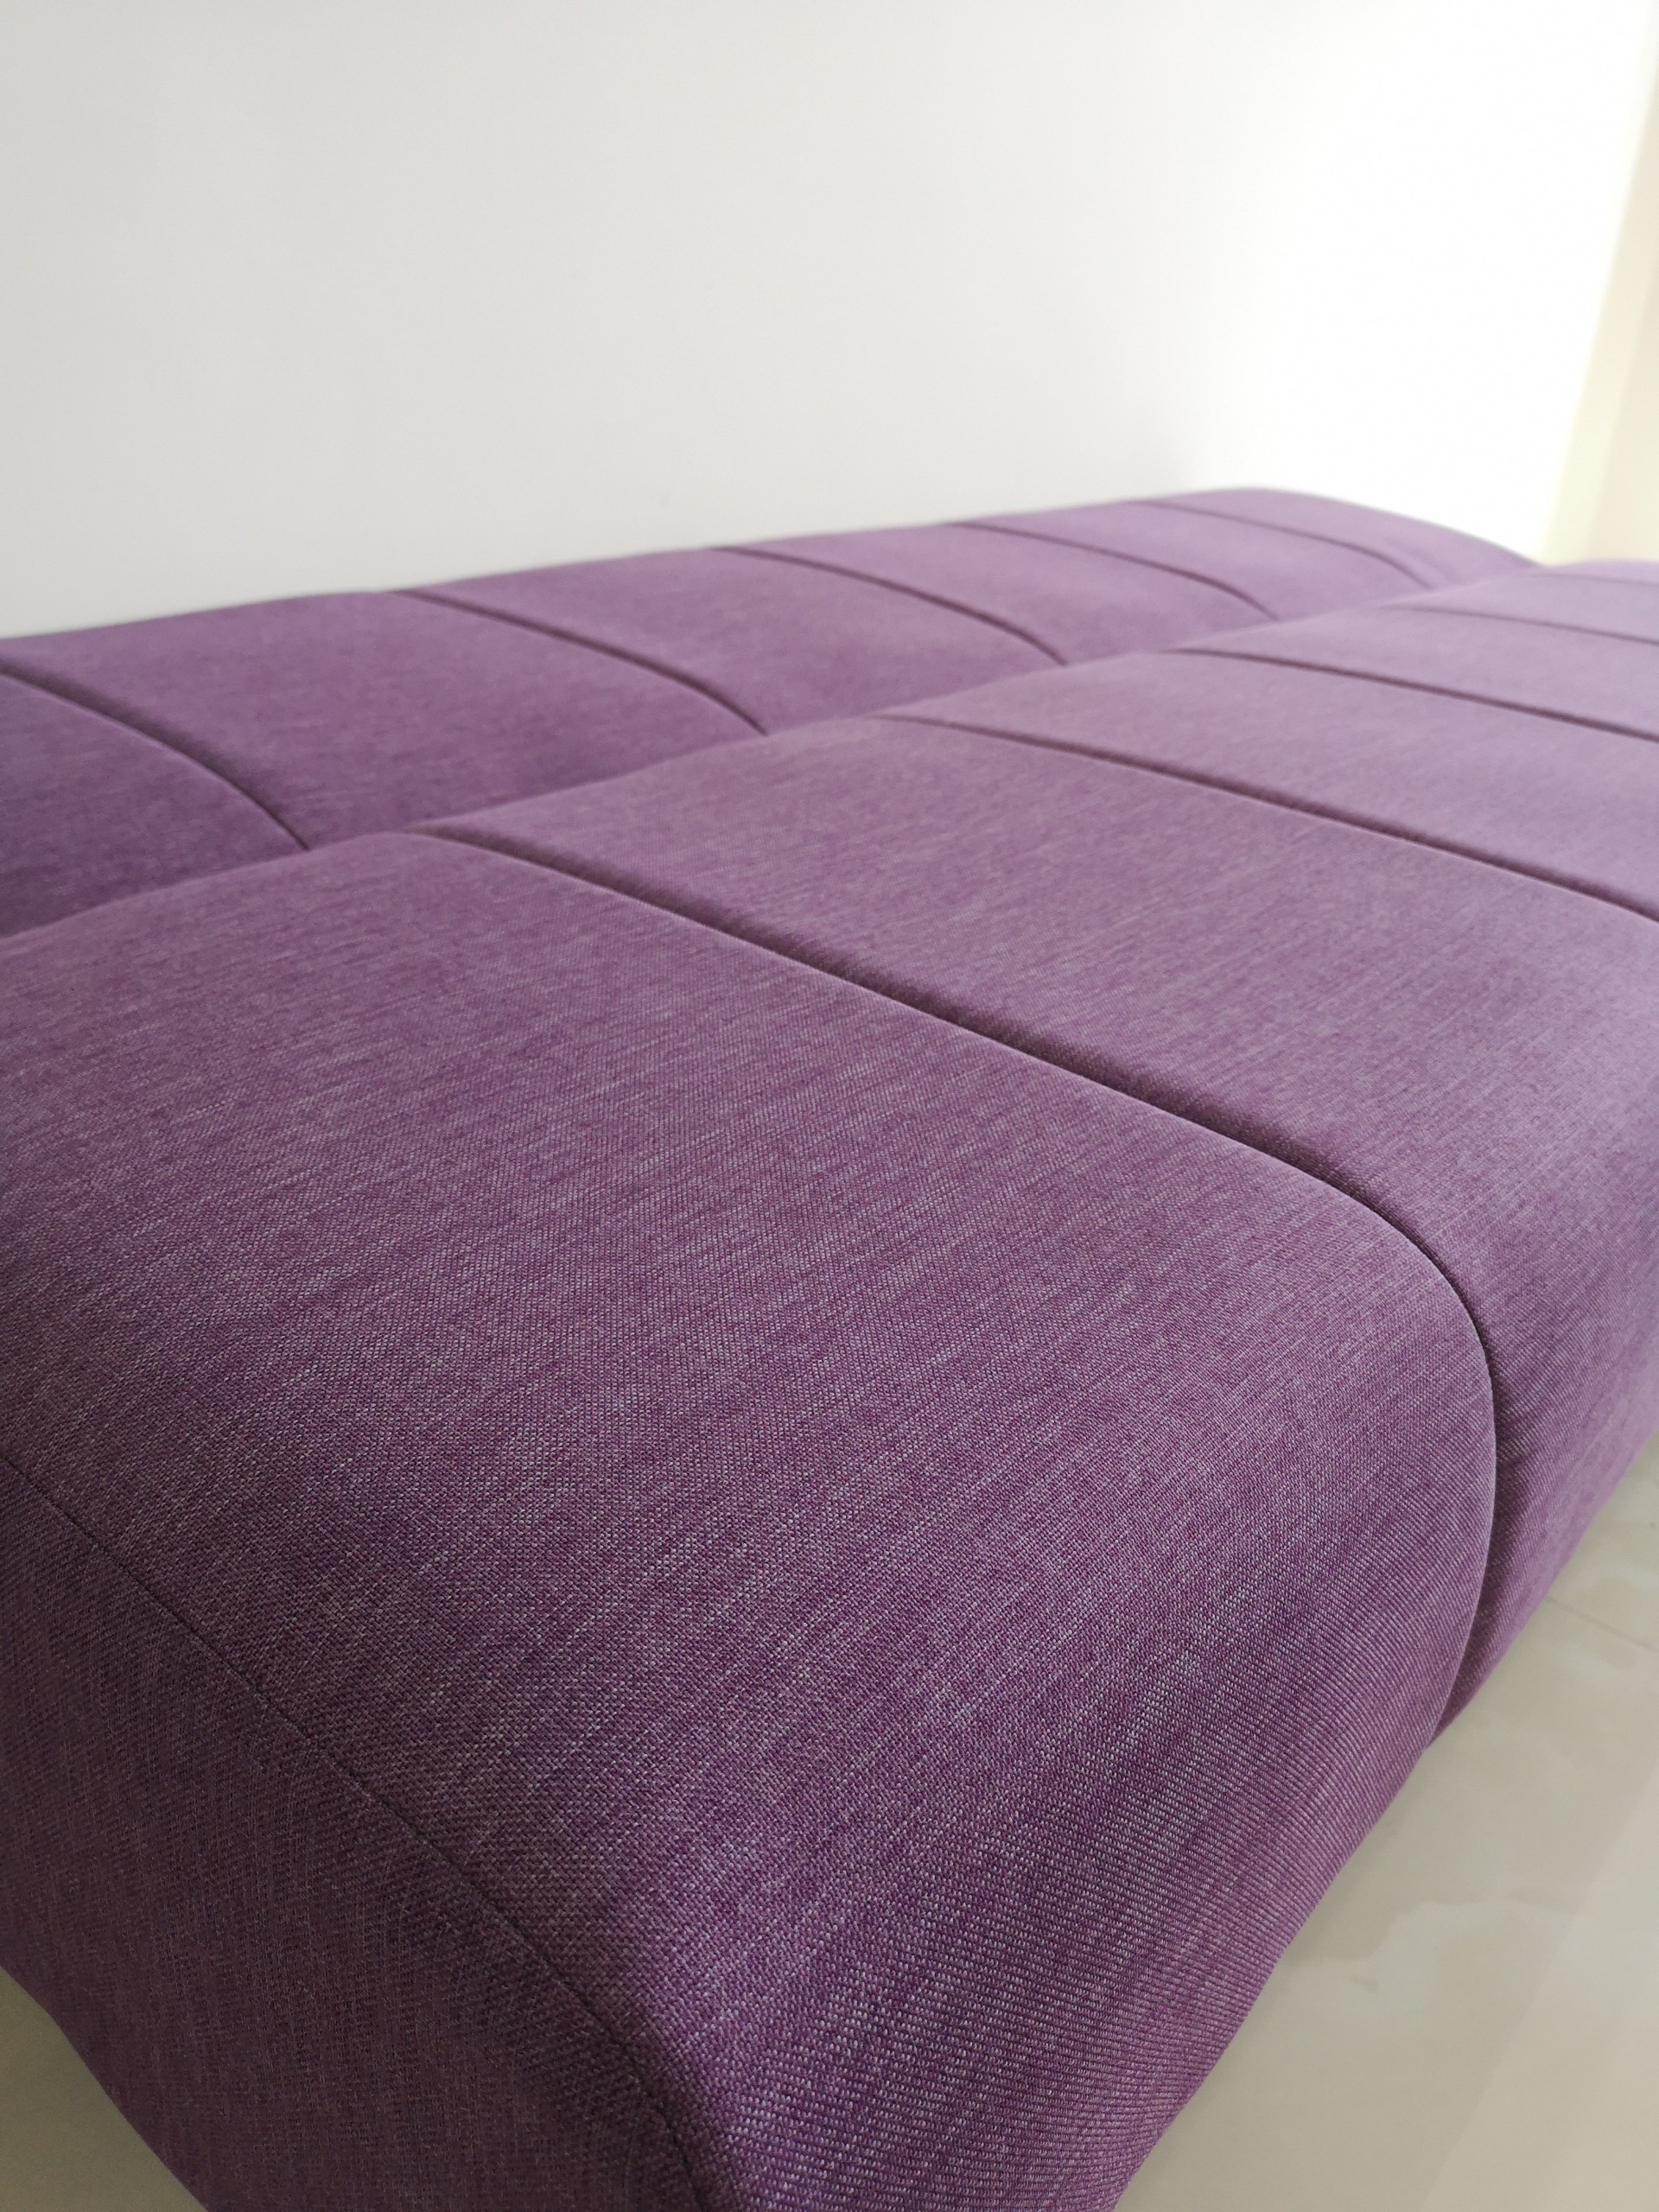 Sofa giường đa năng BNS2022 (170 x 86 x 68) - Tím